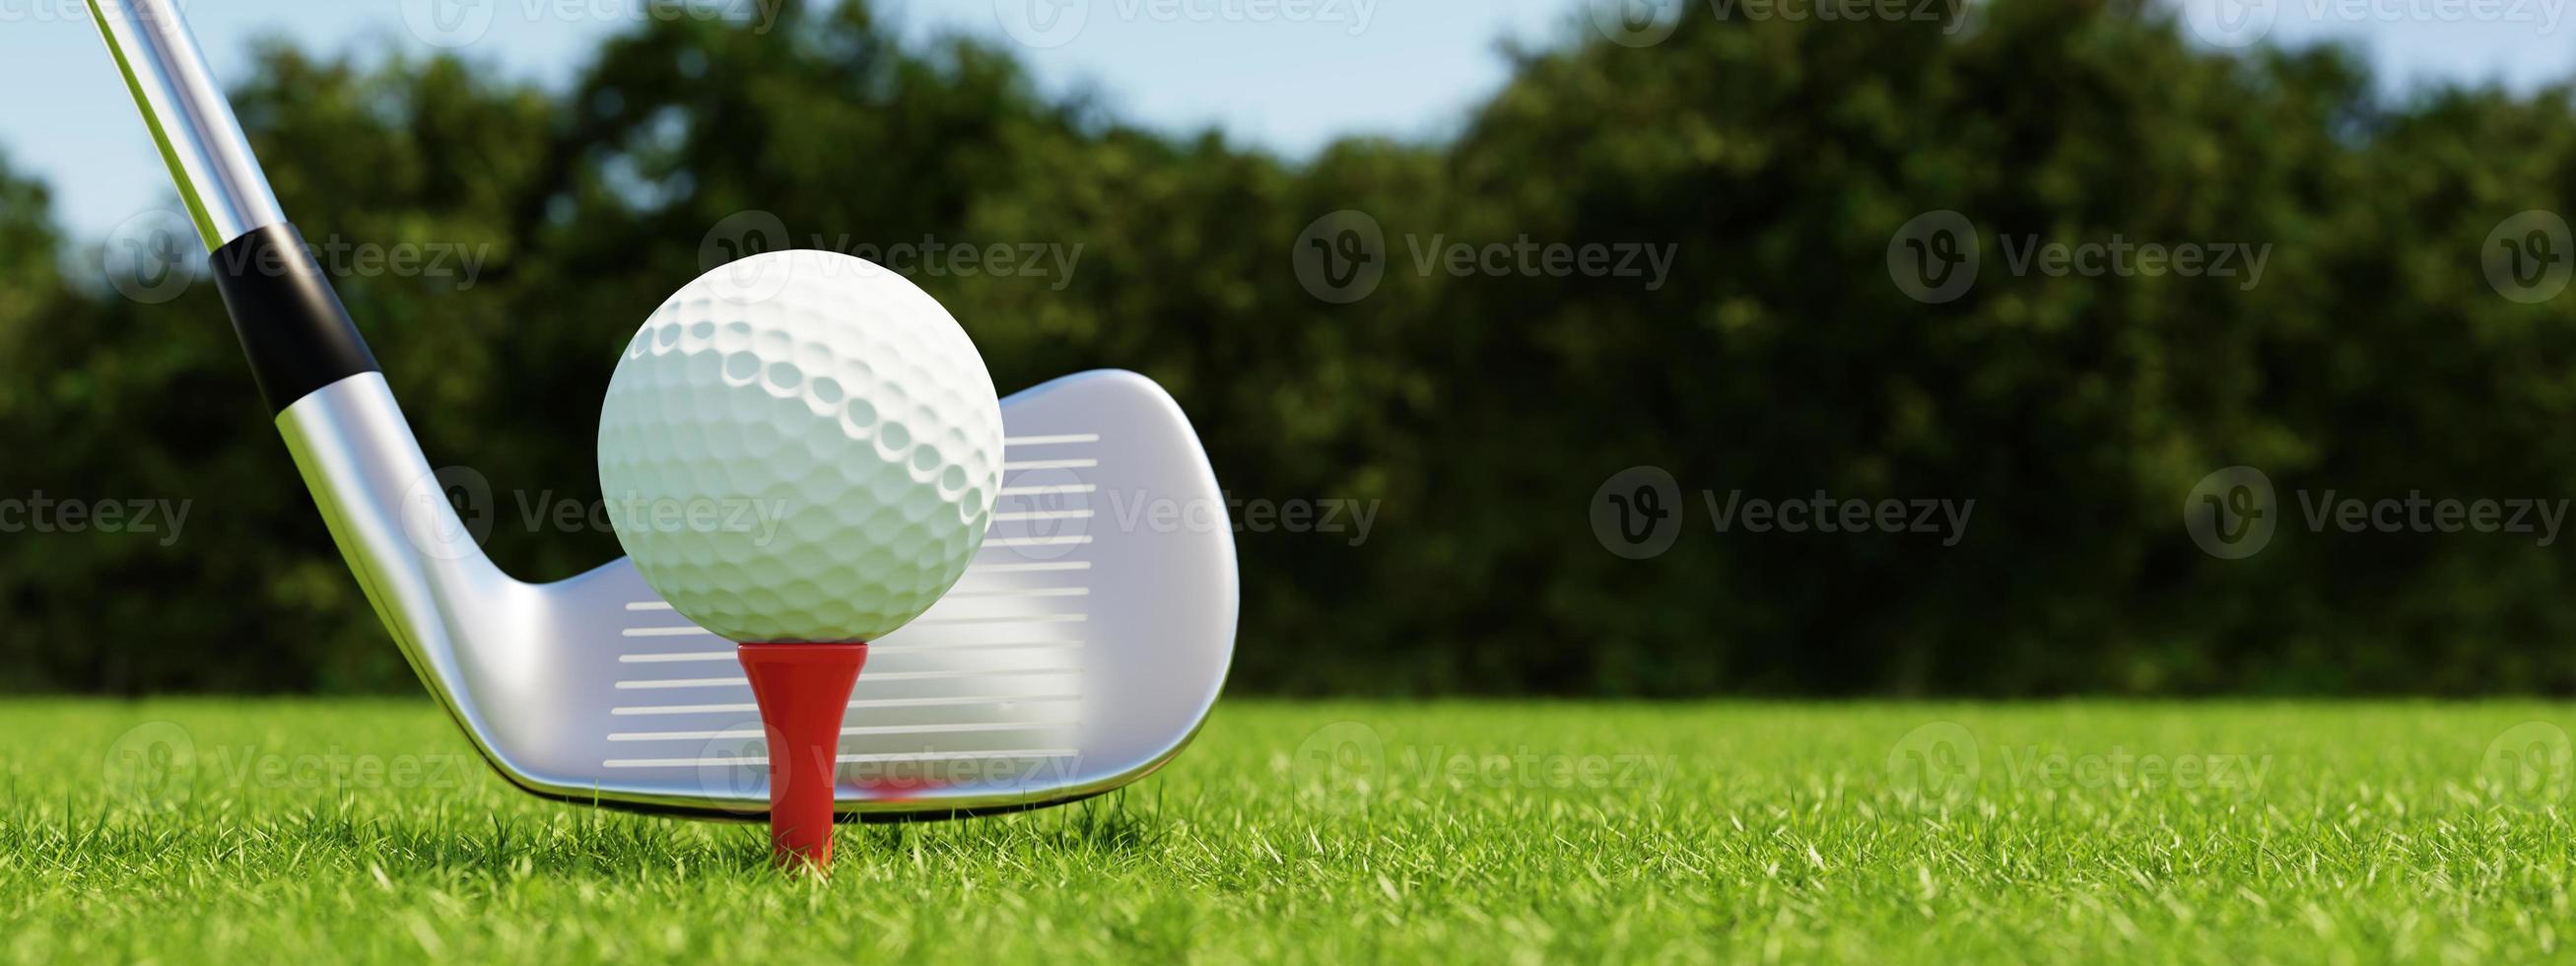 pelota de golf en tee y club de golf con fondo verde de calle. concepto deportivo y atlético. representación de ilustración 3d foto